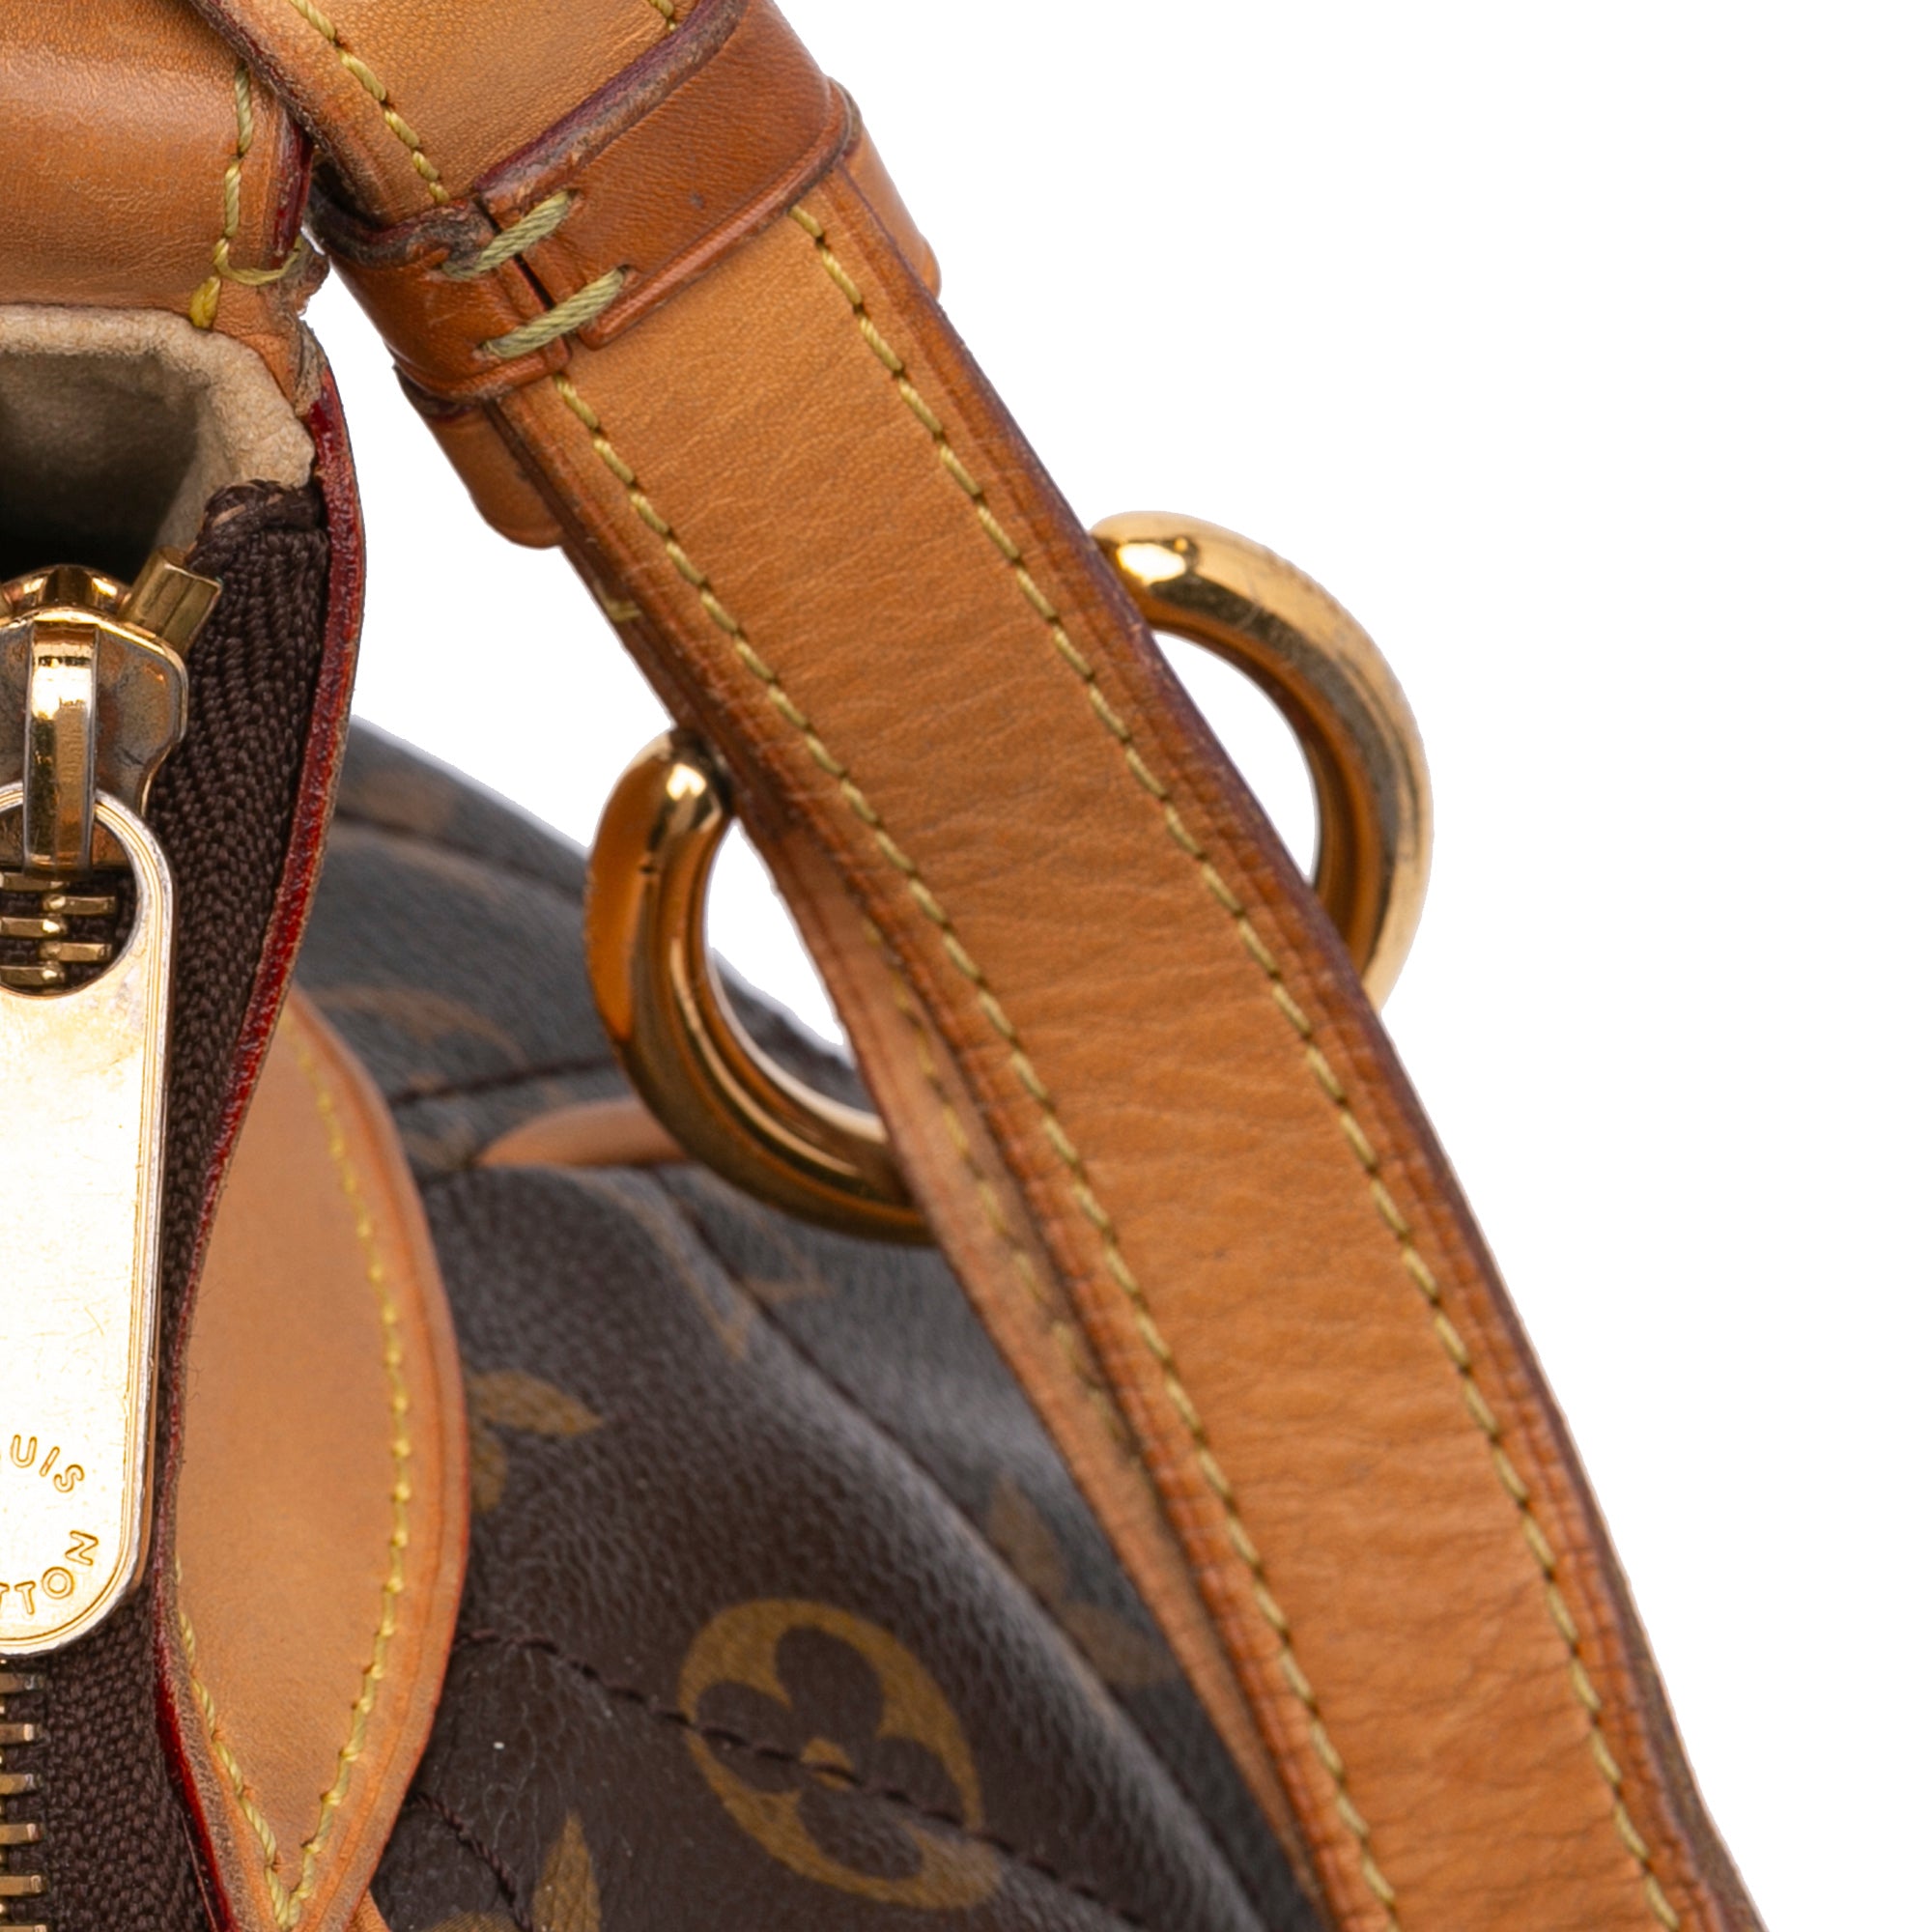 Brown Louis Vuitton Monogram Etoile City GM Shoulder Bag